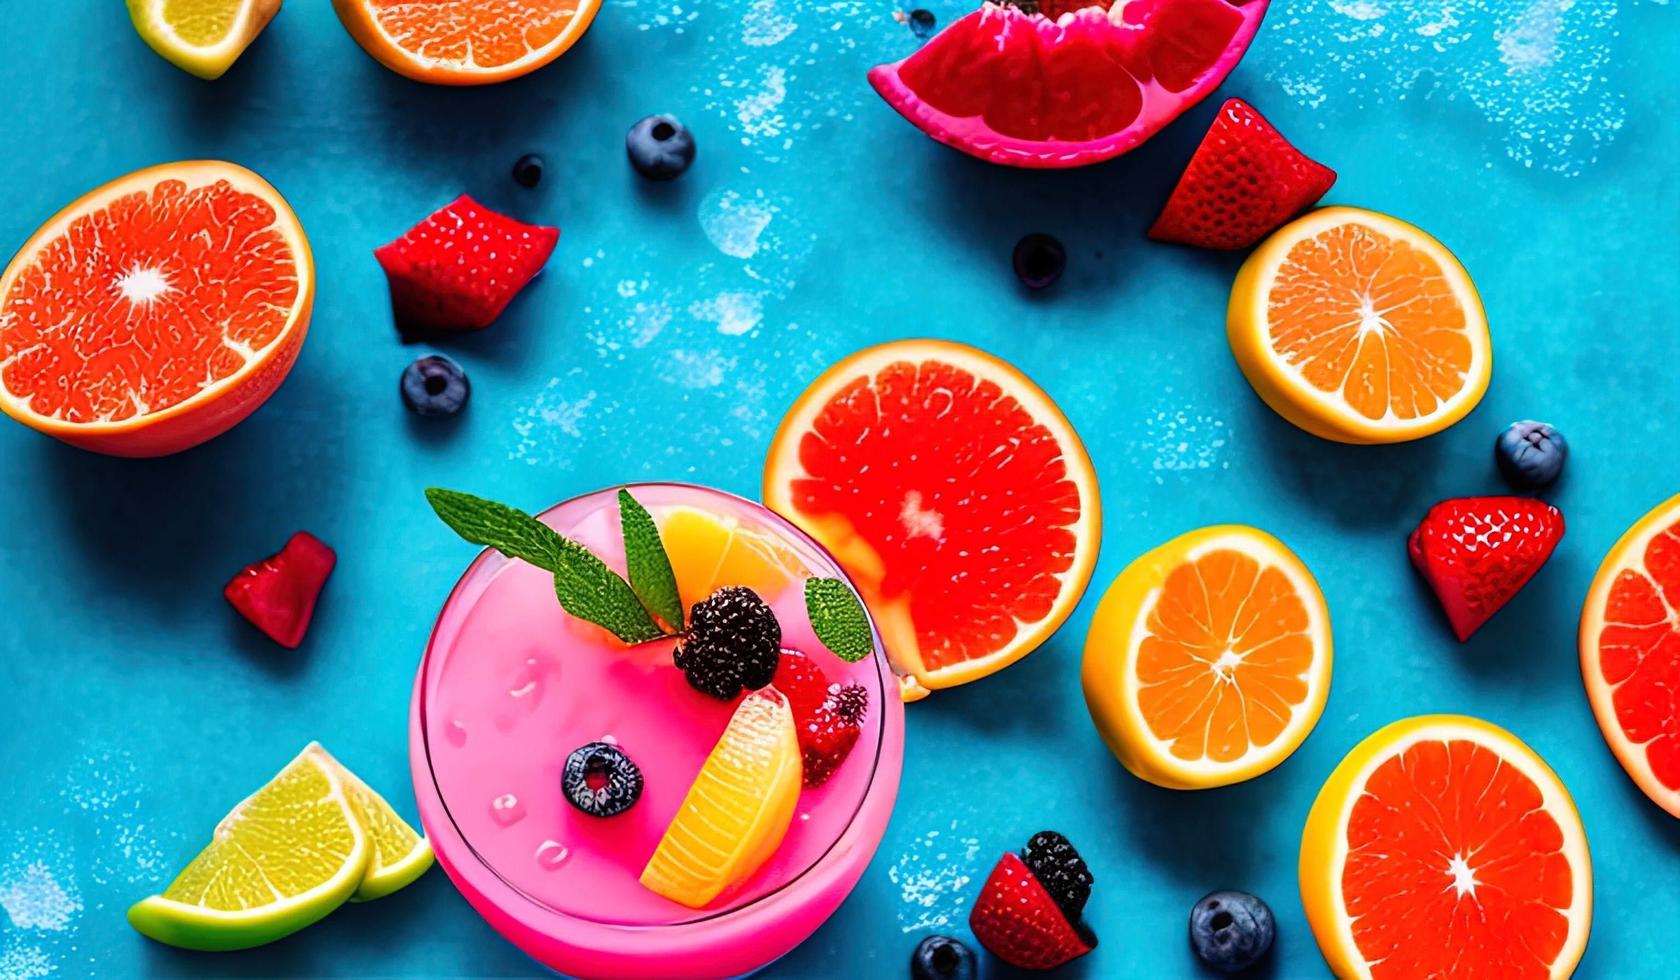 gros plan de photographie alimentaire professionnelle de cocktails d'été de fruits tropicaux avec pamplemousse rouge, baies et glace sur fond bleu photo